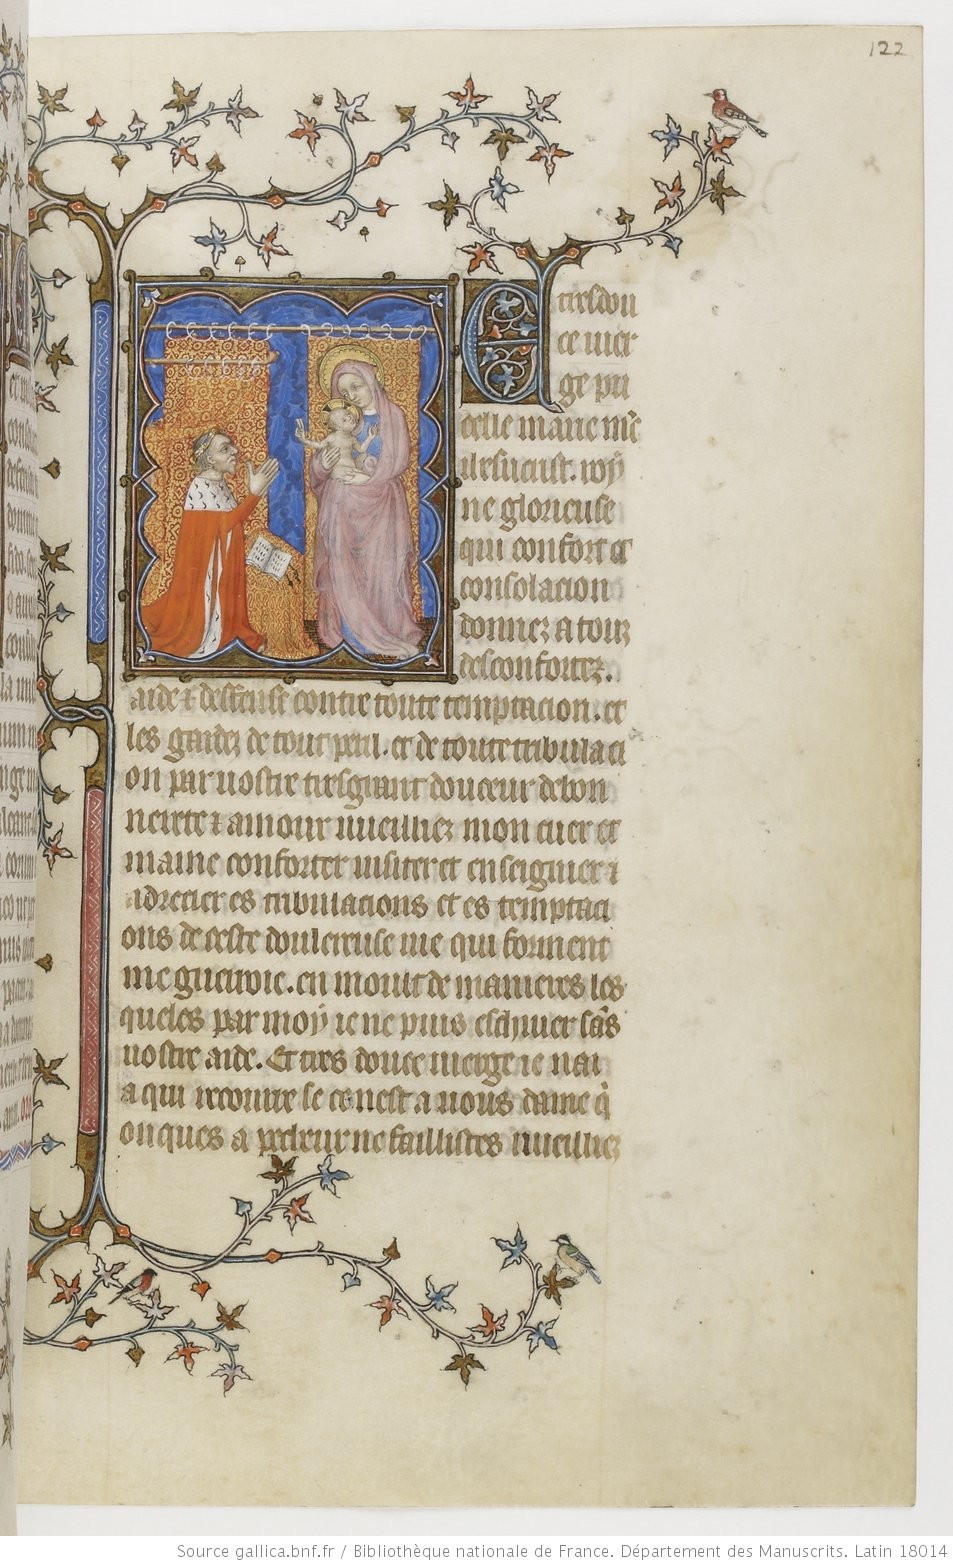 1385-90 Jean de Berry devant la Vierge à l'Enfant Petites heures de Jean de Berry, Gallica MS 18014 fol 122r